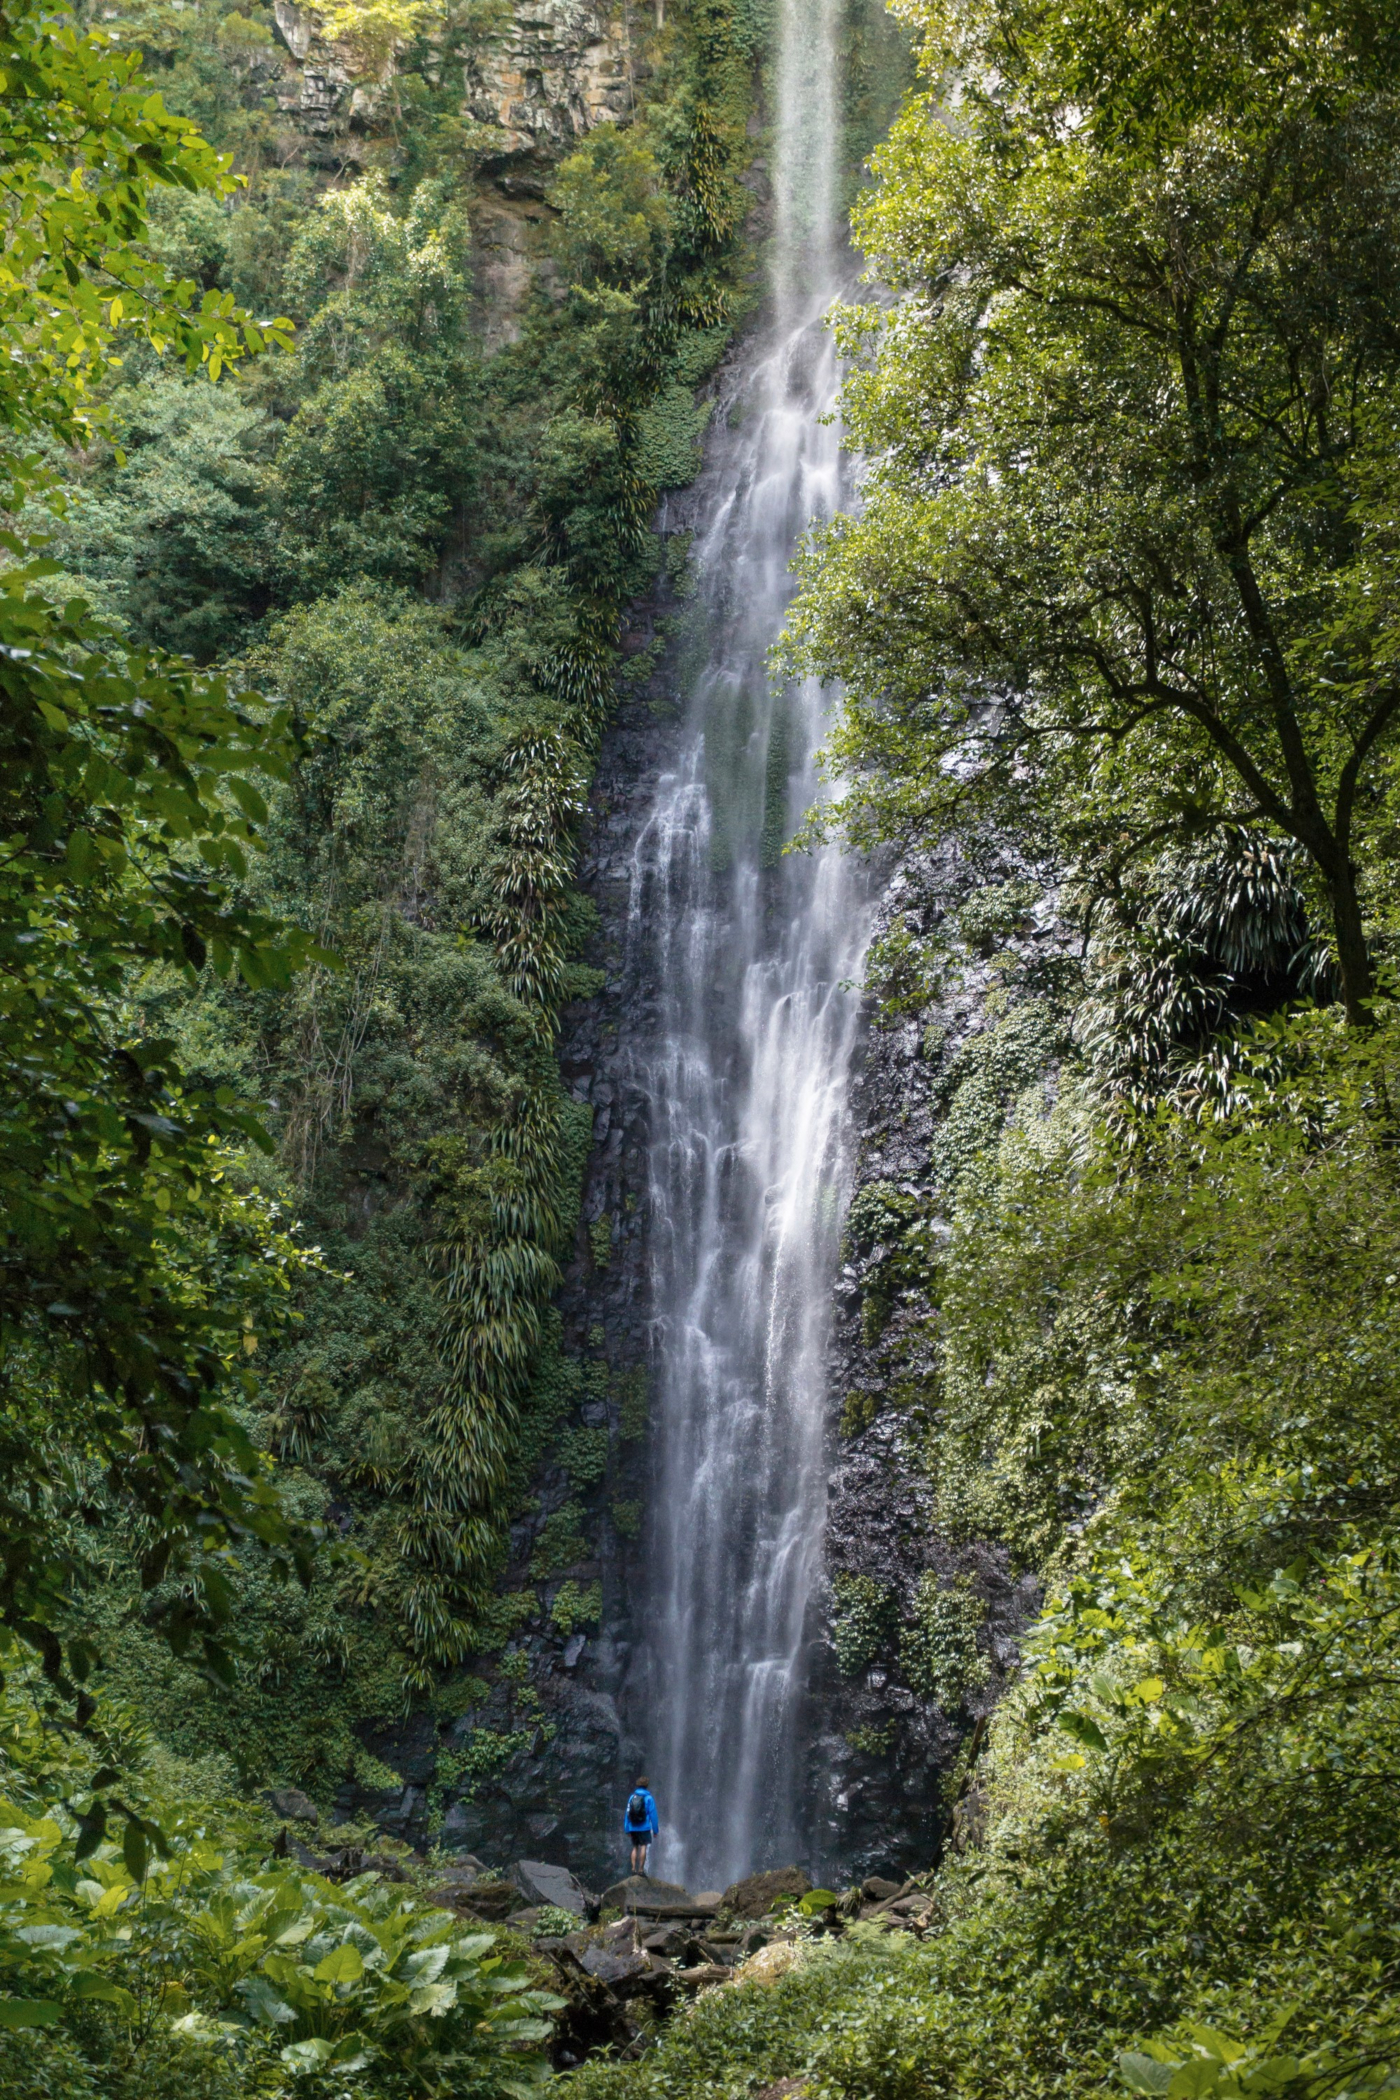 Larapinta Falls Scenic Rim